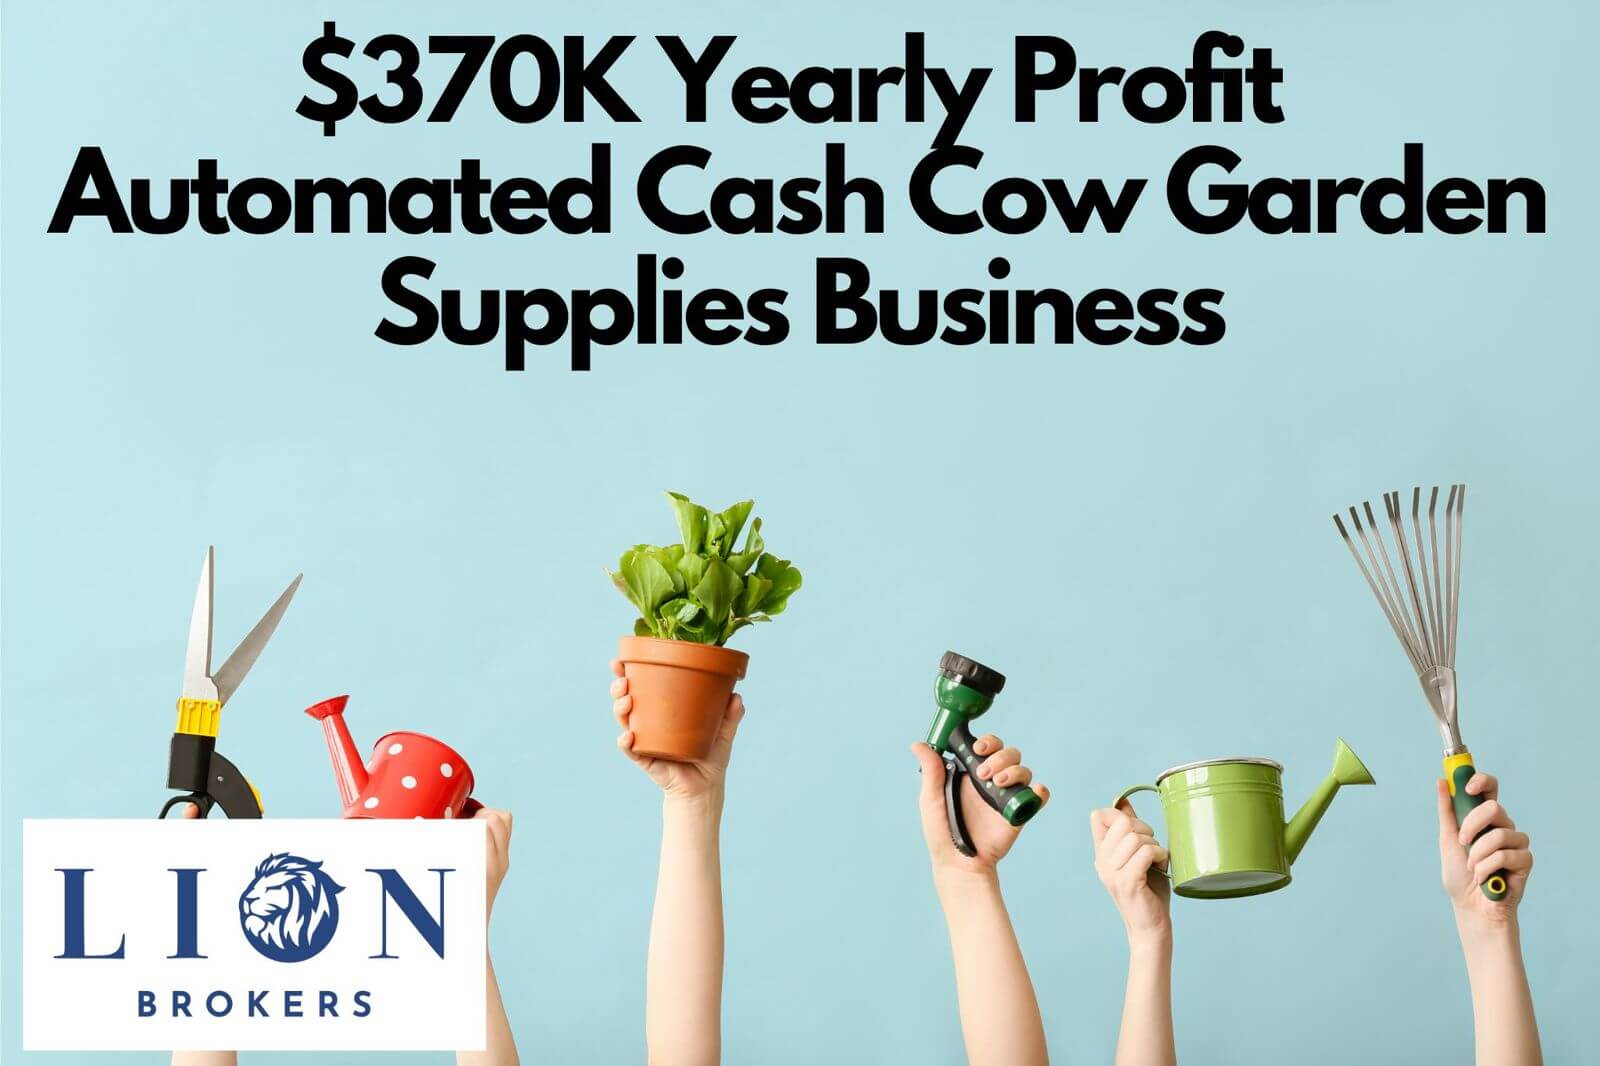 (已成交)370K Yearly Profit Automated Cash Cow Garden Supplies Business